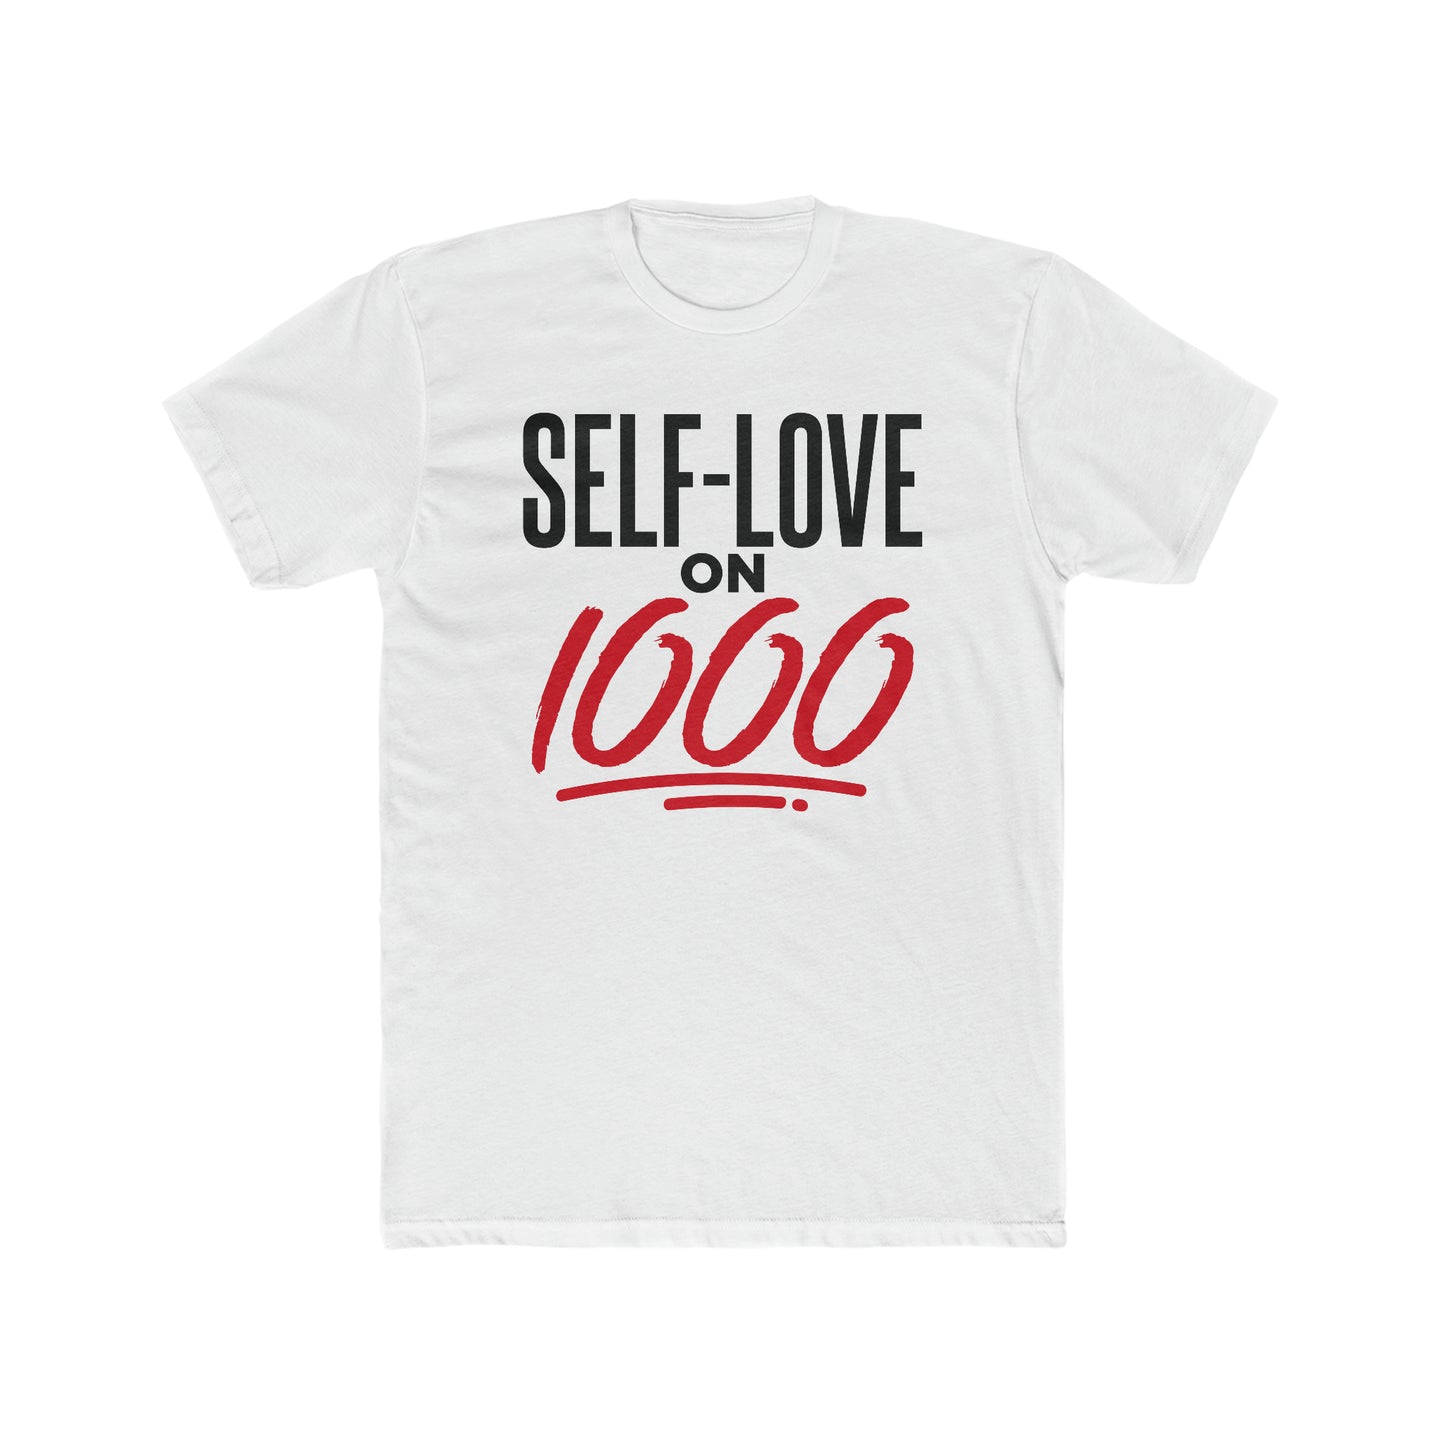 "Self-Love on 1000" tee